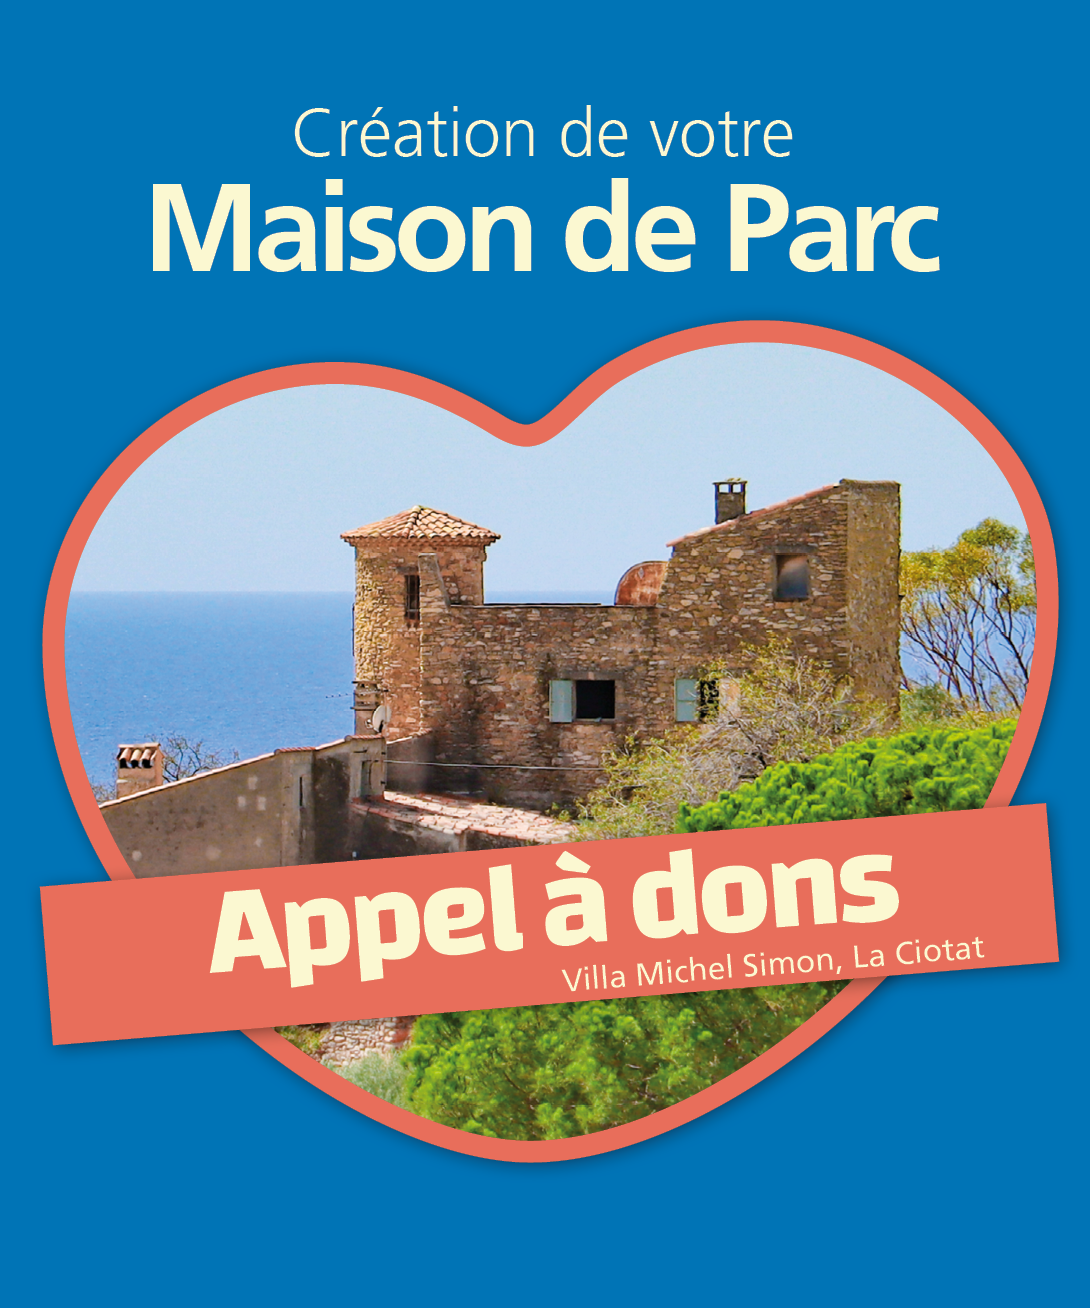 Participez à l'aménagement de la Villa Michel Simon en Maison du Parc national des Calanques